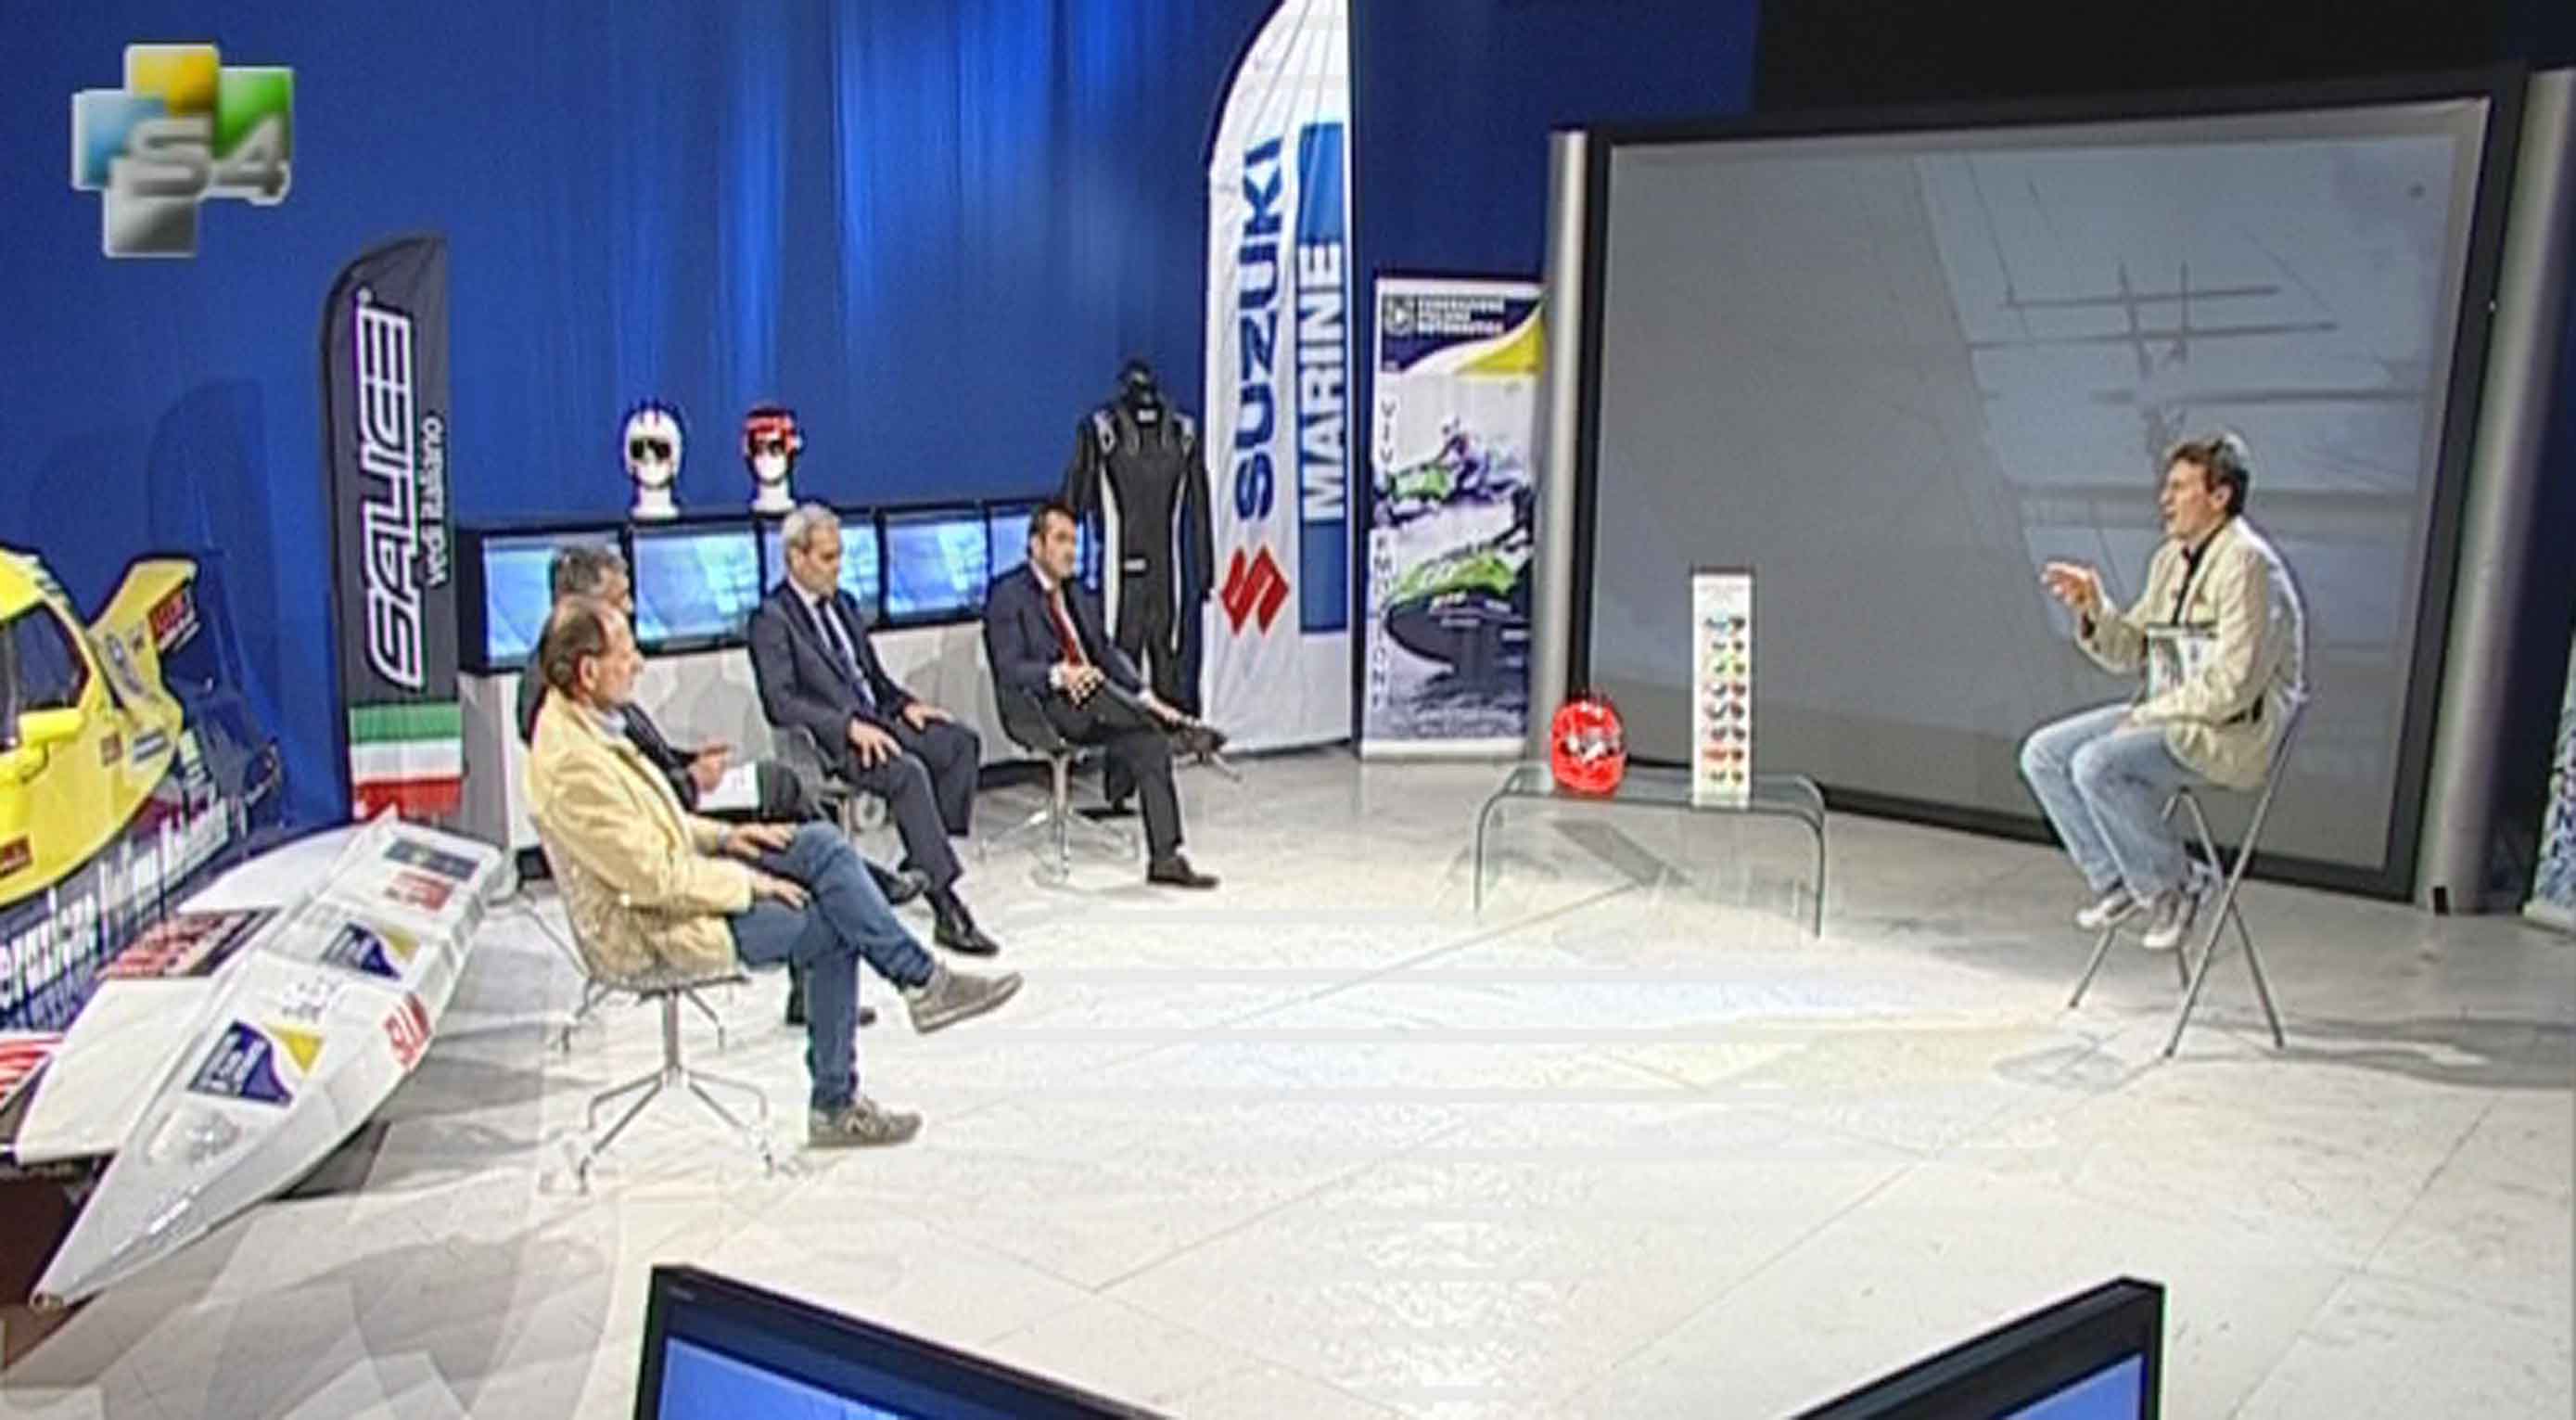 La nautica in TV con Blu Sport, SuperSea e il talk show S4